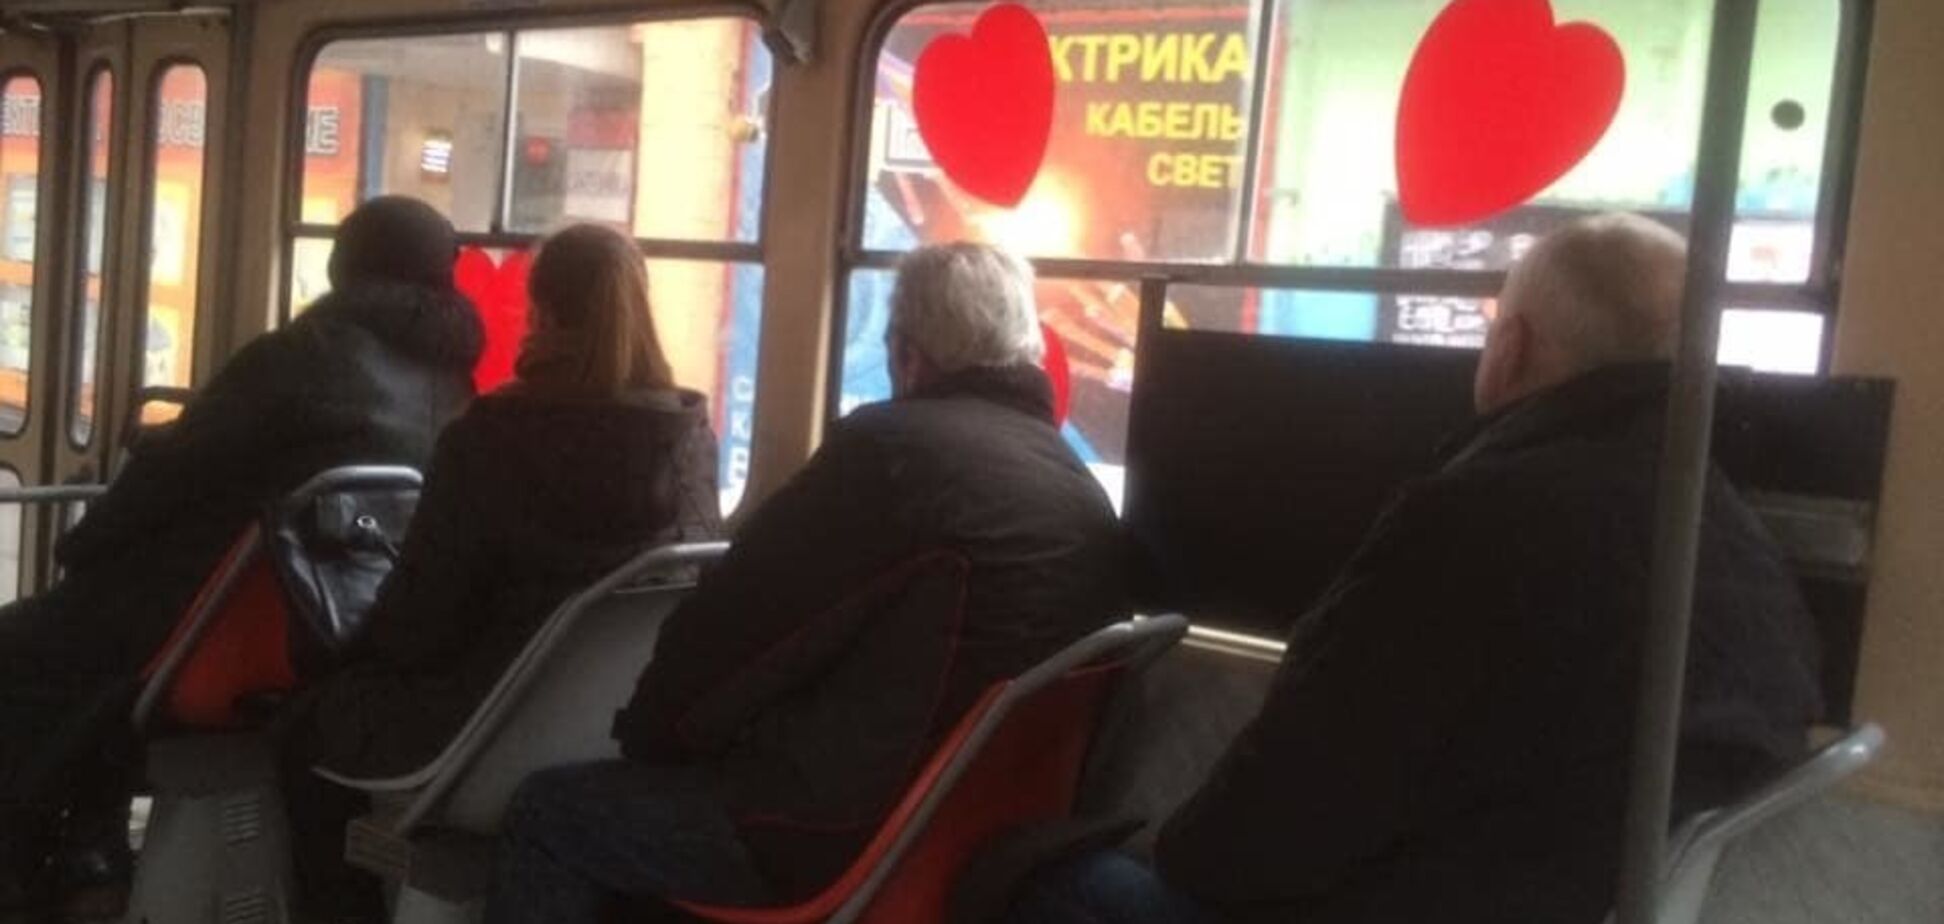 У центрі Києва помітили трамвай у сердечках: опубліковано фото